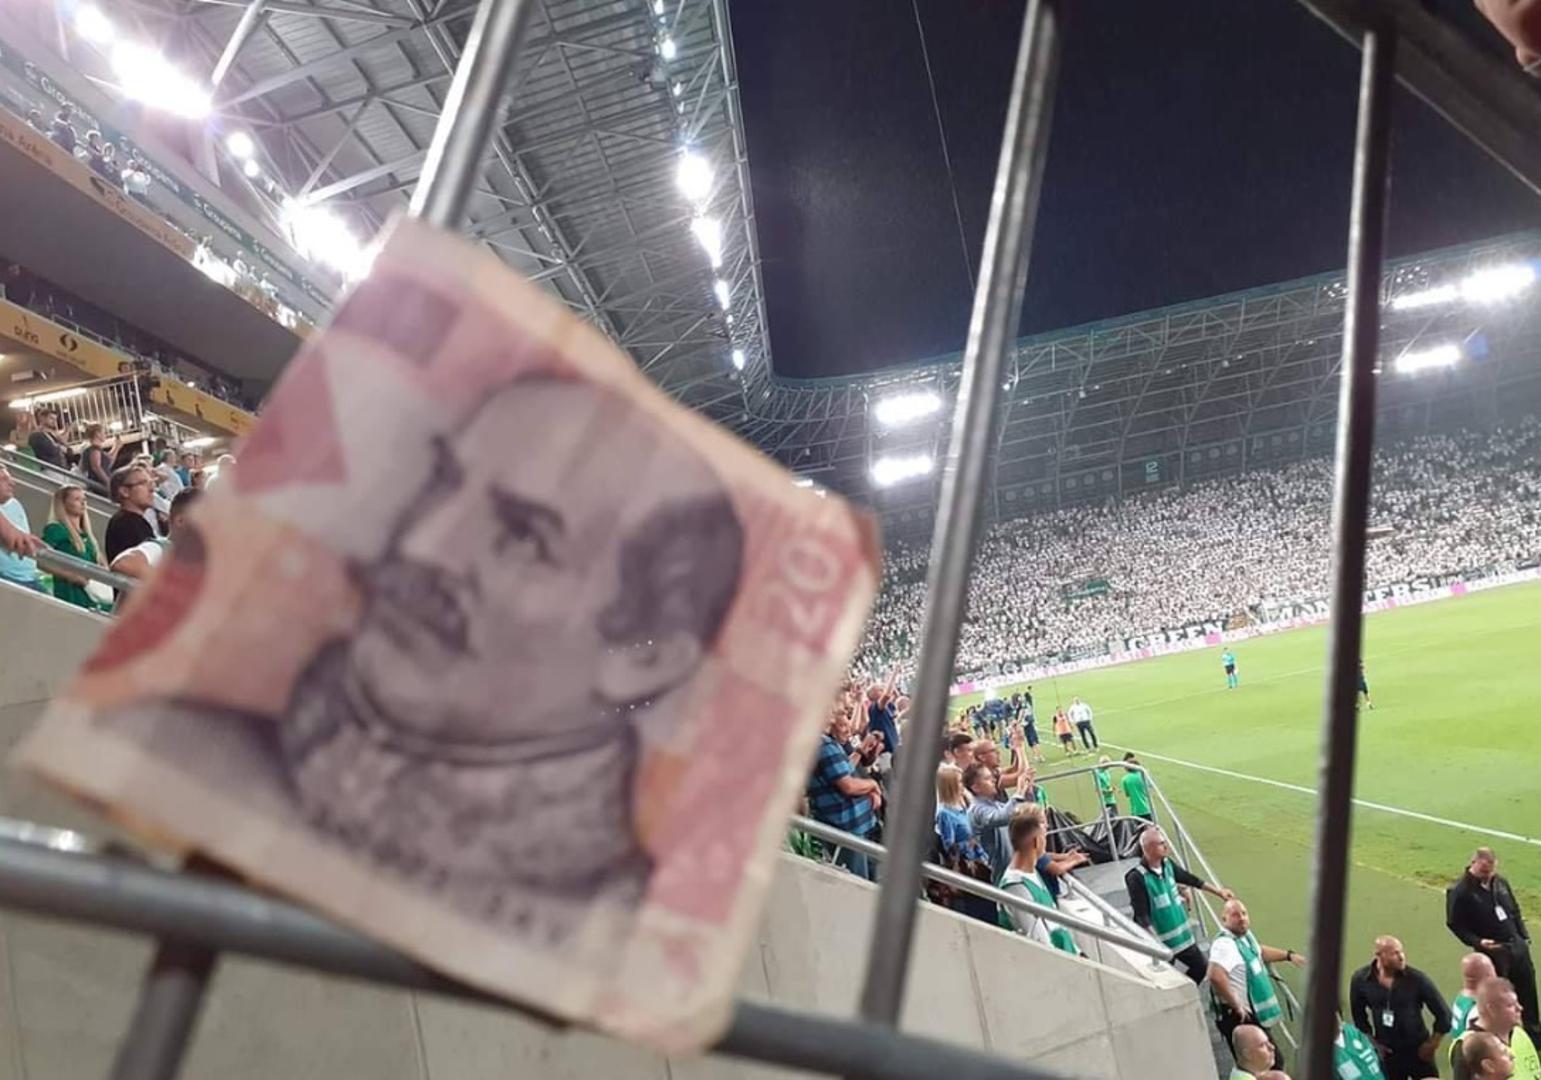 Naime, netko od navijača na ogradu je zakačio novčanicu od 20 kuna na kojoj se nalazi ban Josip Jelačić, hrvatski junak koji nas je u 19. stoljeću spasio od daljnje mađarizacije, a na kojeg Mađari gledaju drugačijim očima